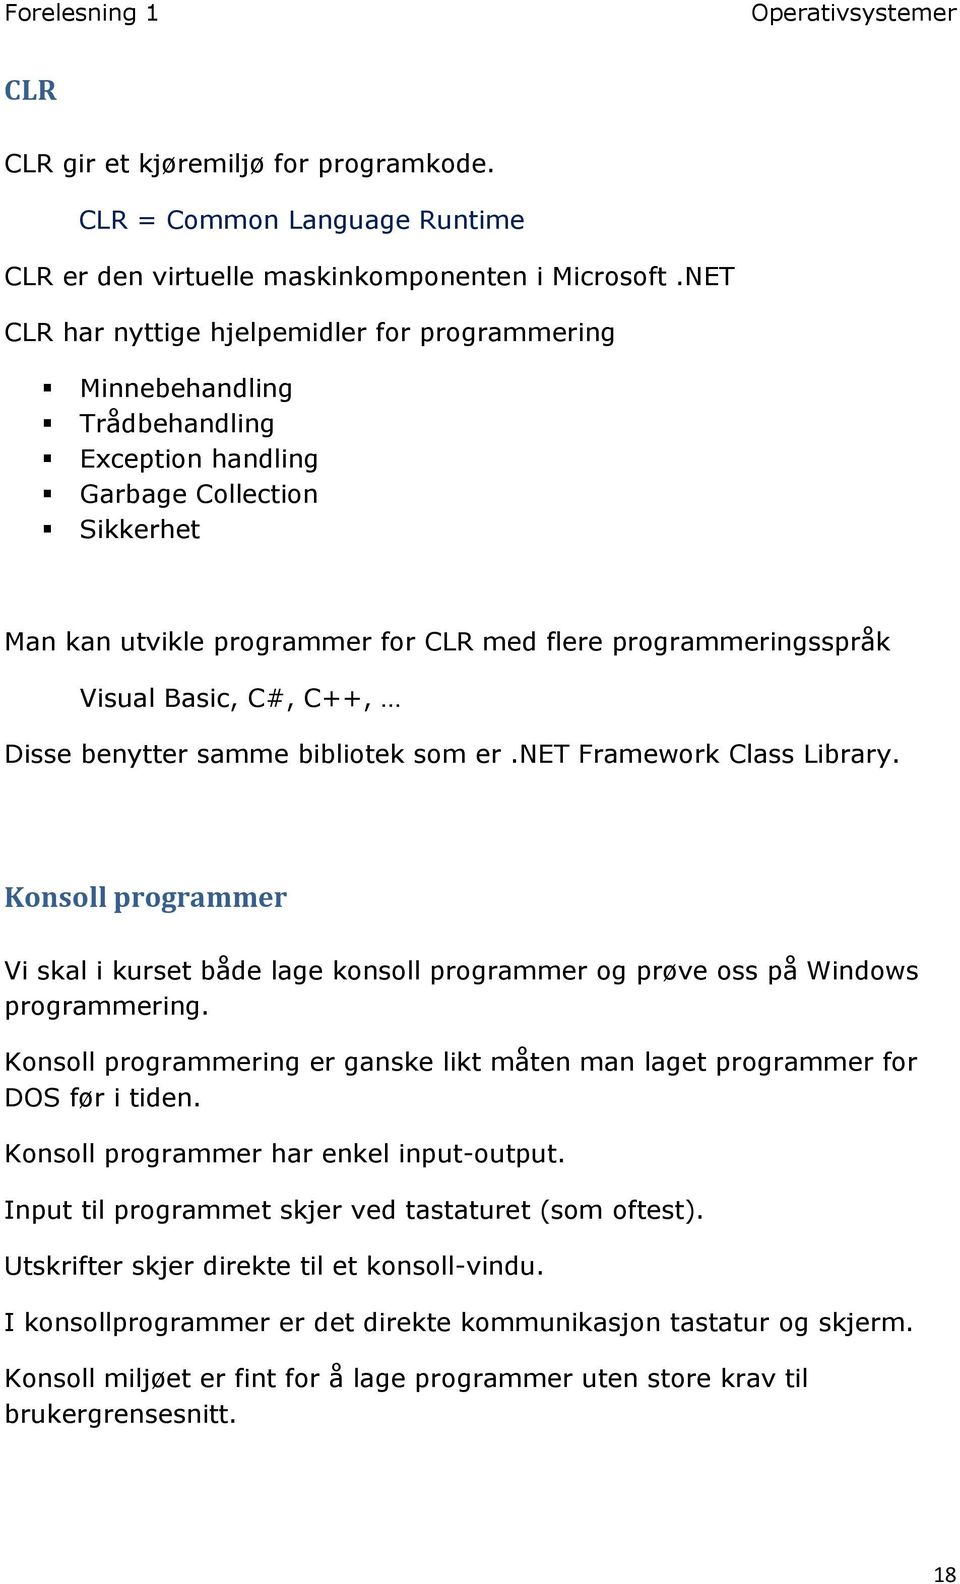 Visual Basic, C#, C++, Disse benytter samme bibliotek som er.net Framework Class Library. Konsoll programmer Vi skal i kurset både lage konsoll programmer og prøve oss på Windows programmering.